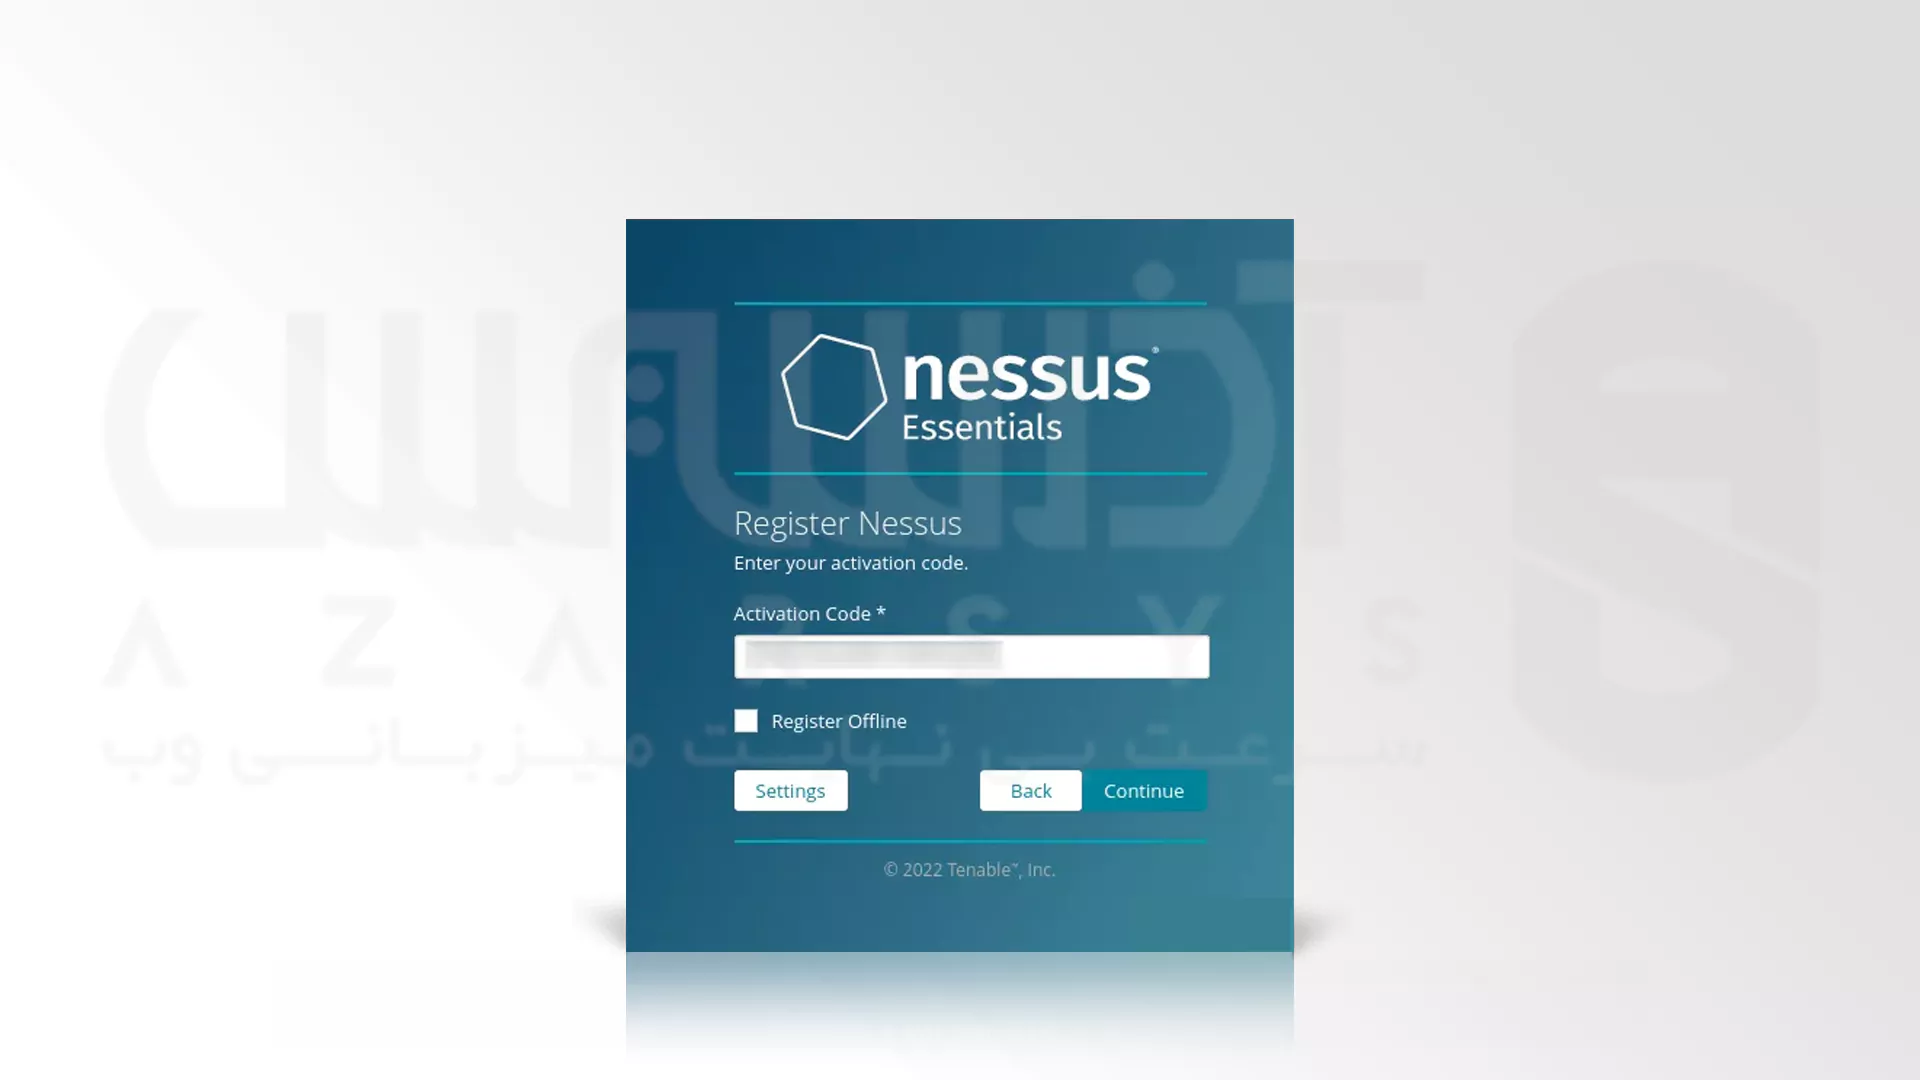 نحوه دسترسی به پیشخوان وب و پیکربندی Nessus